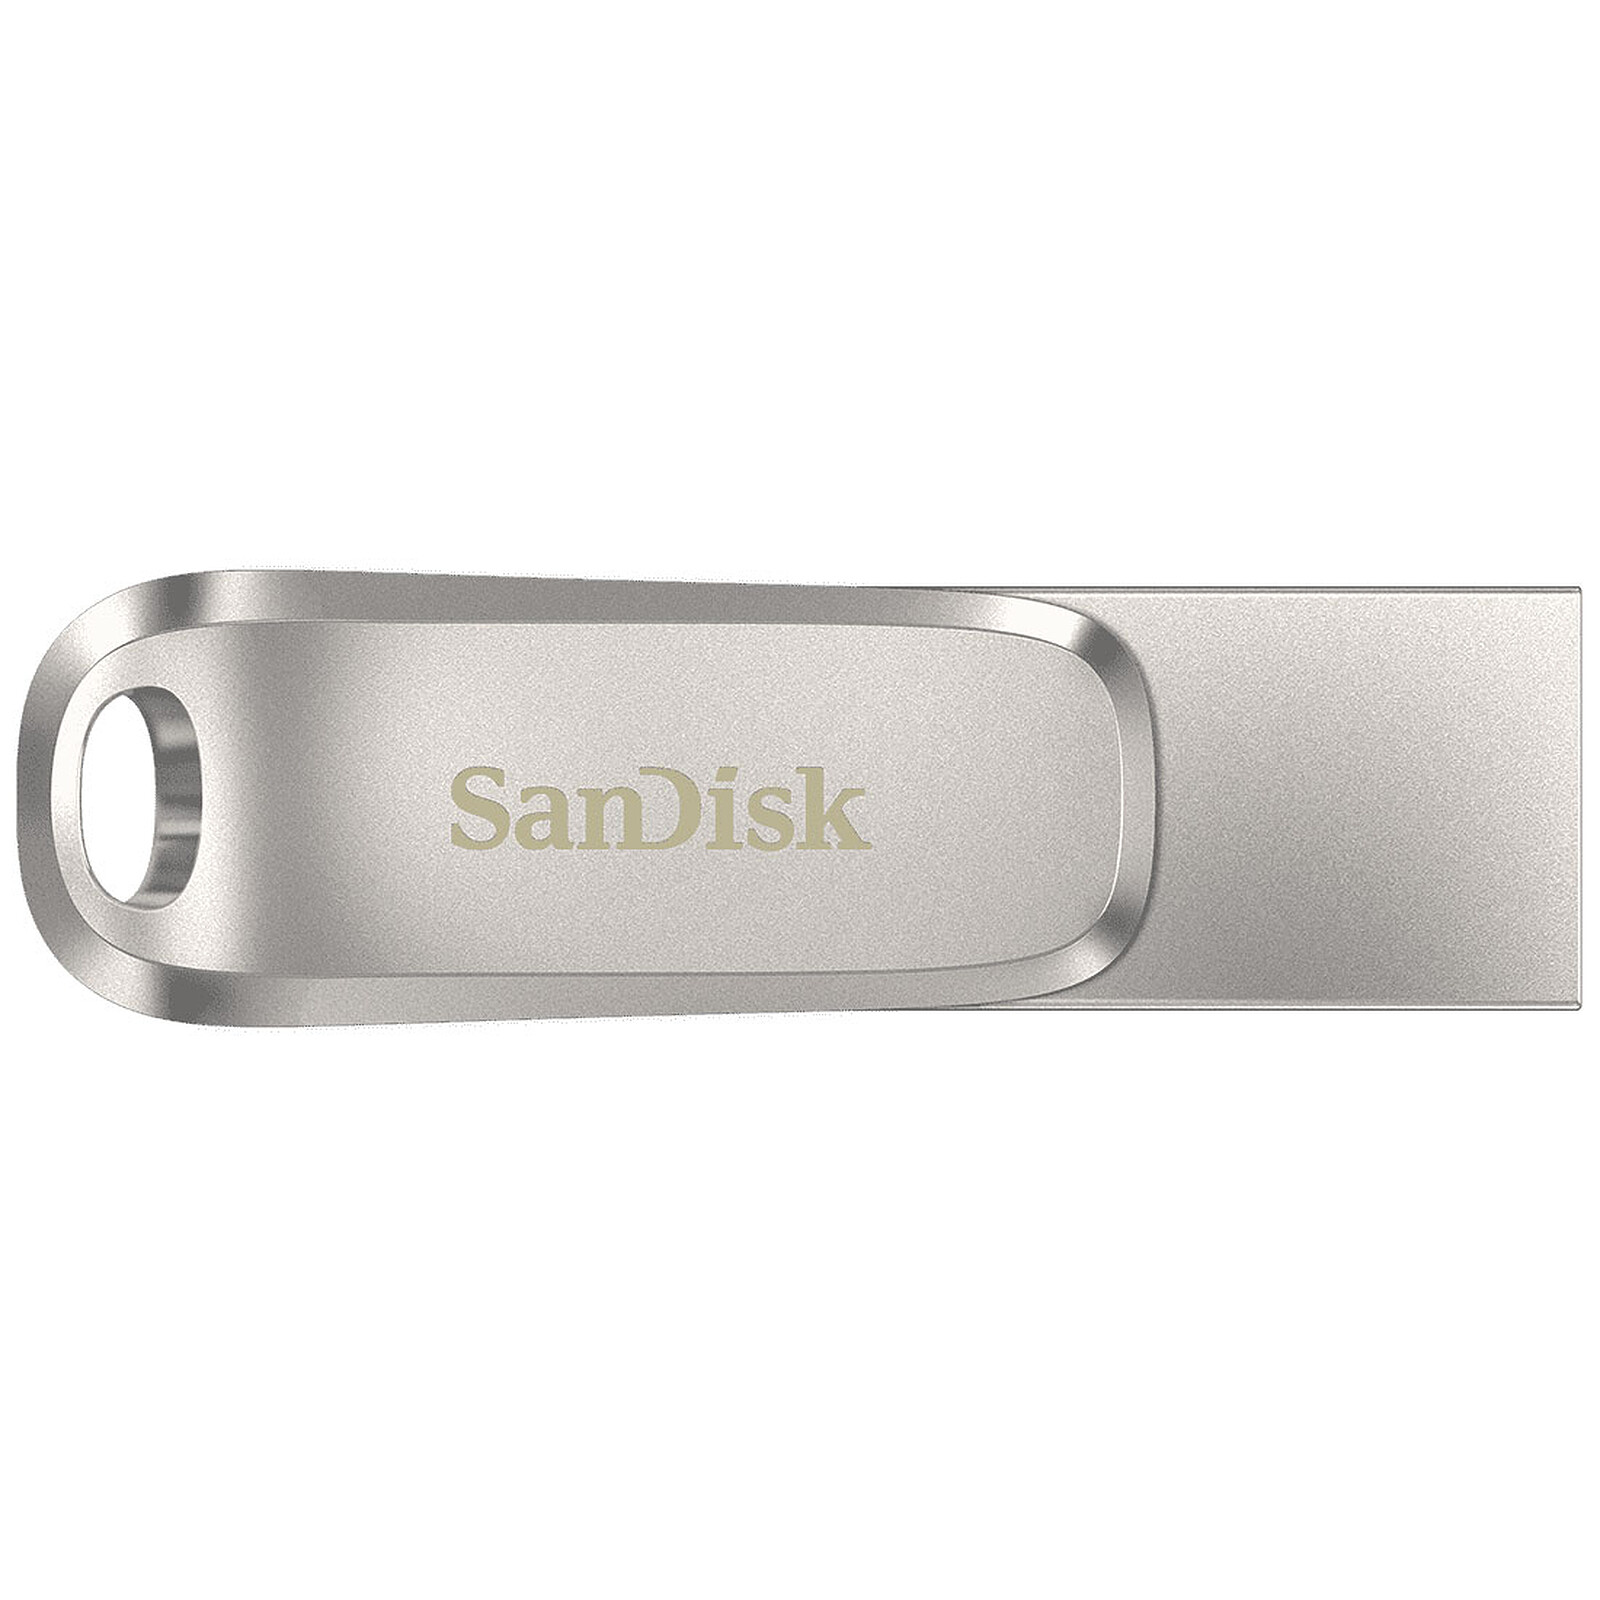 CES 2018 : SanDisk dévoile la clé USB de 1 To la plus compacte du